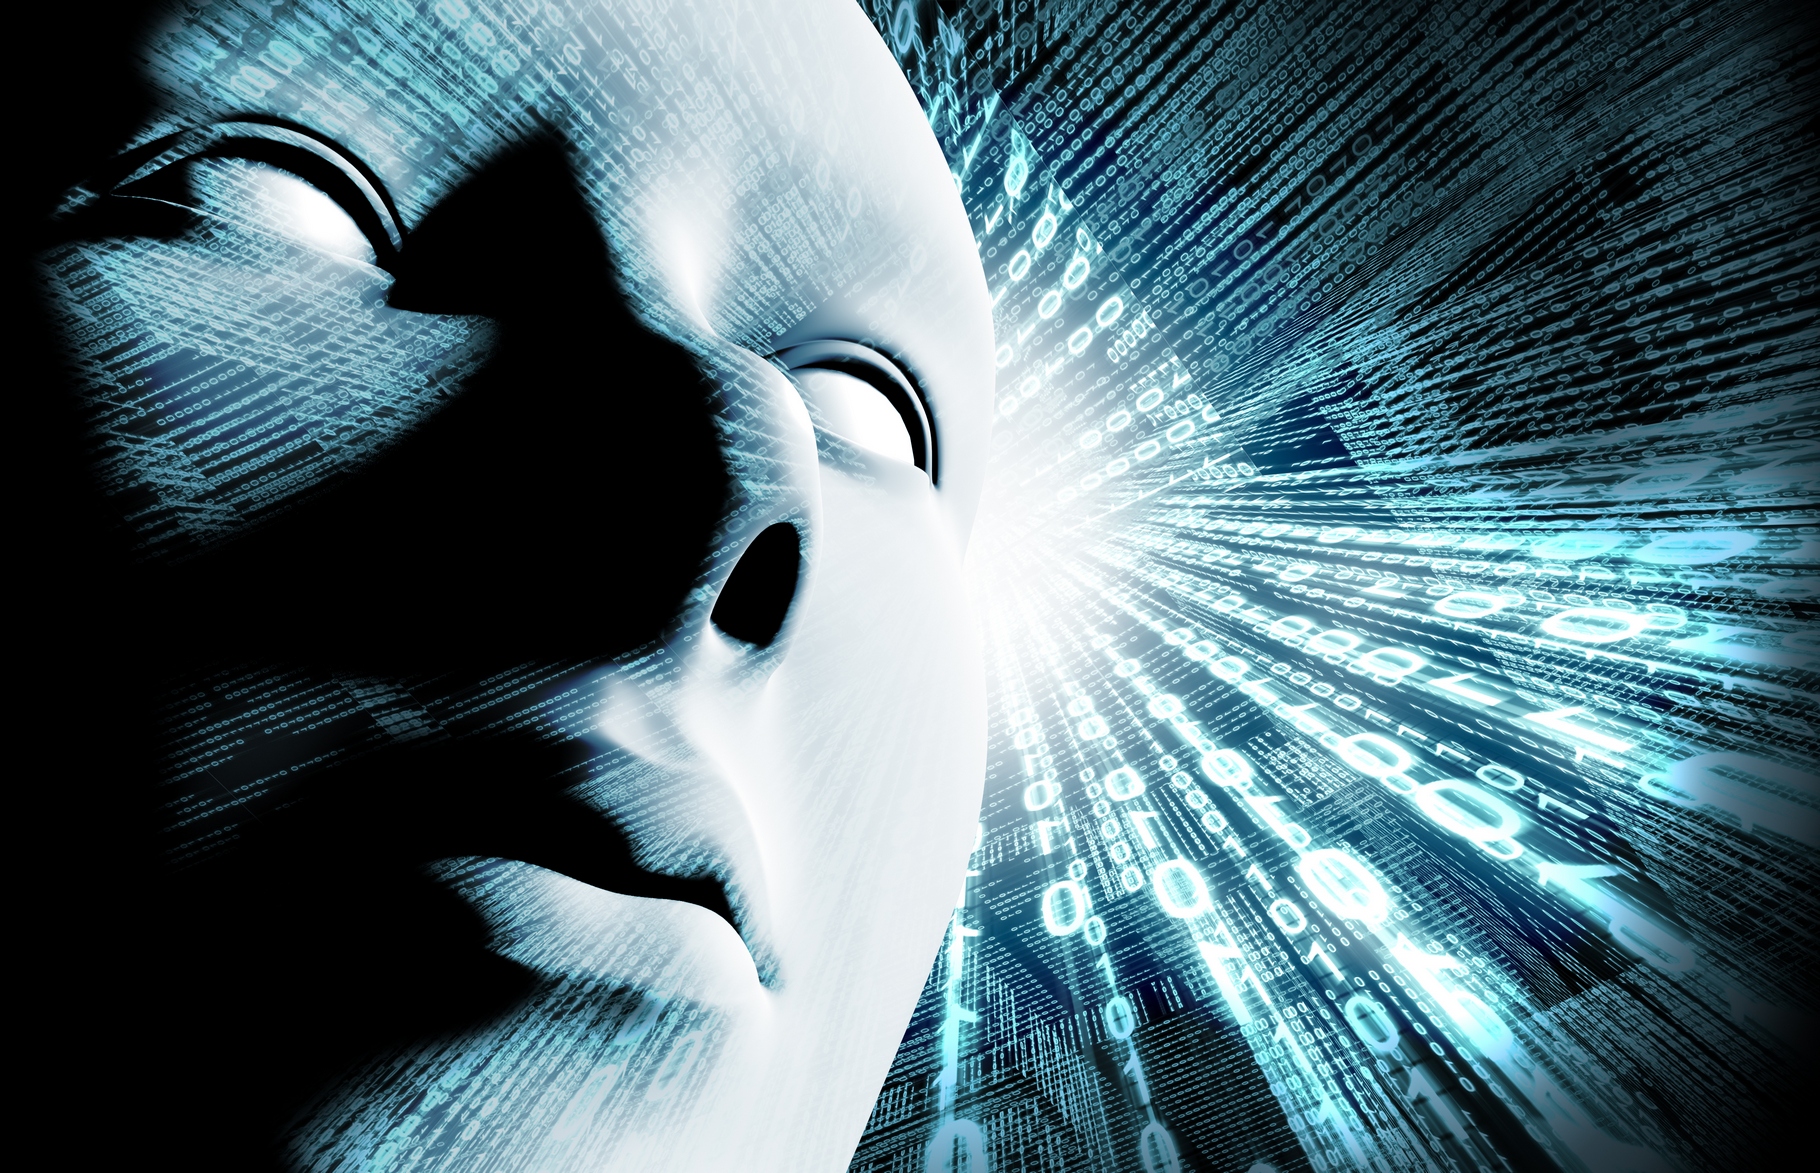 Les progrès récents en matière d’intelligence artificielle et de robotique ont ravivé le débat sur les risques que prend l’humanité de se voir un jour supplantée par les machines. Google suggère de s’attaquer plutôt aux problématiques de sécurité concrètes. © Carlos castilla, Shutterstock